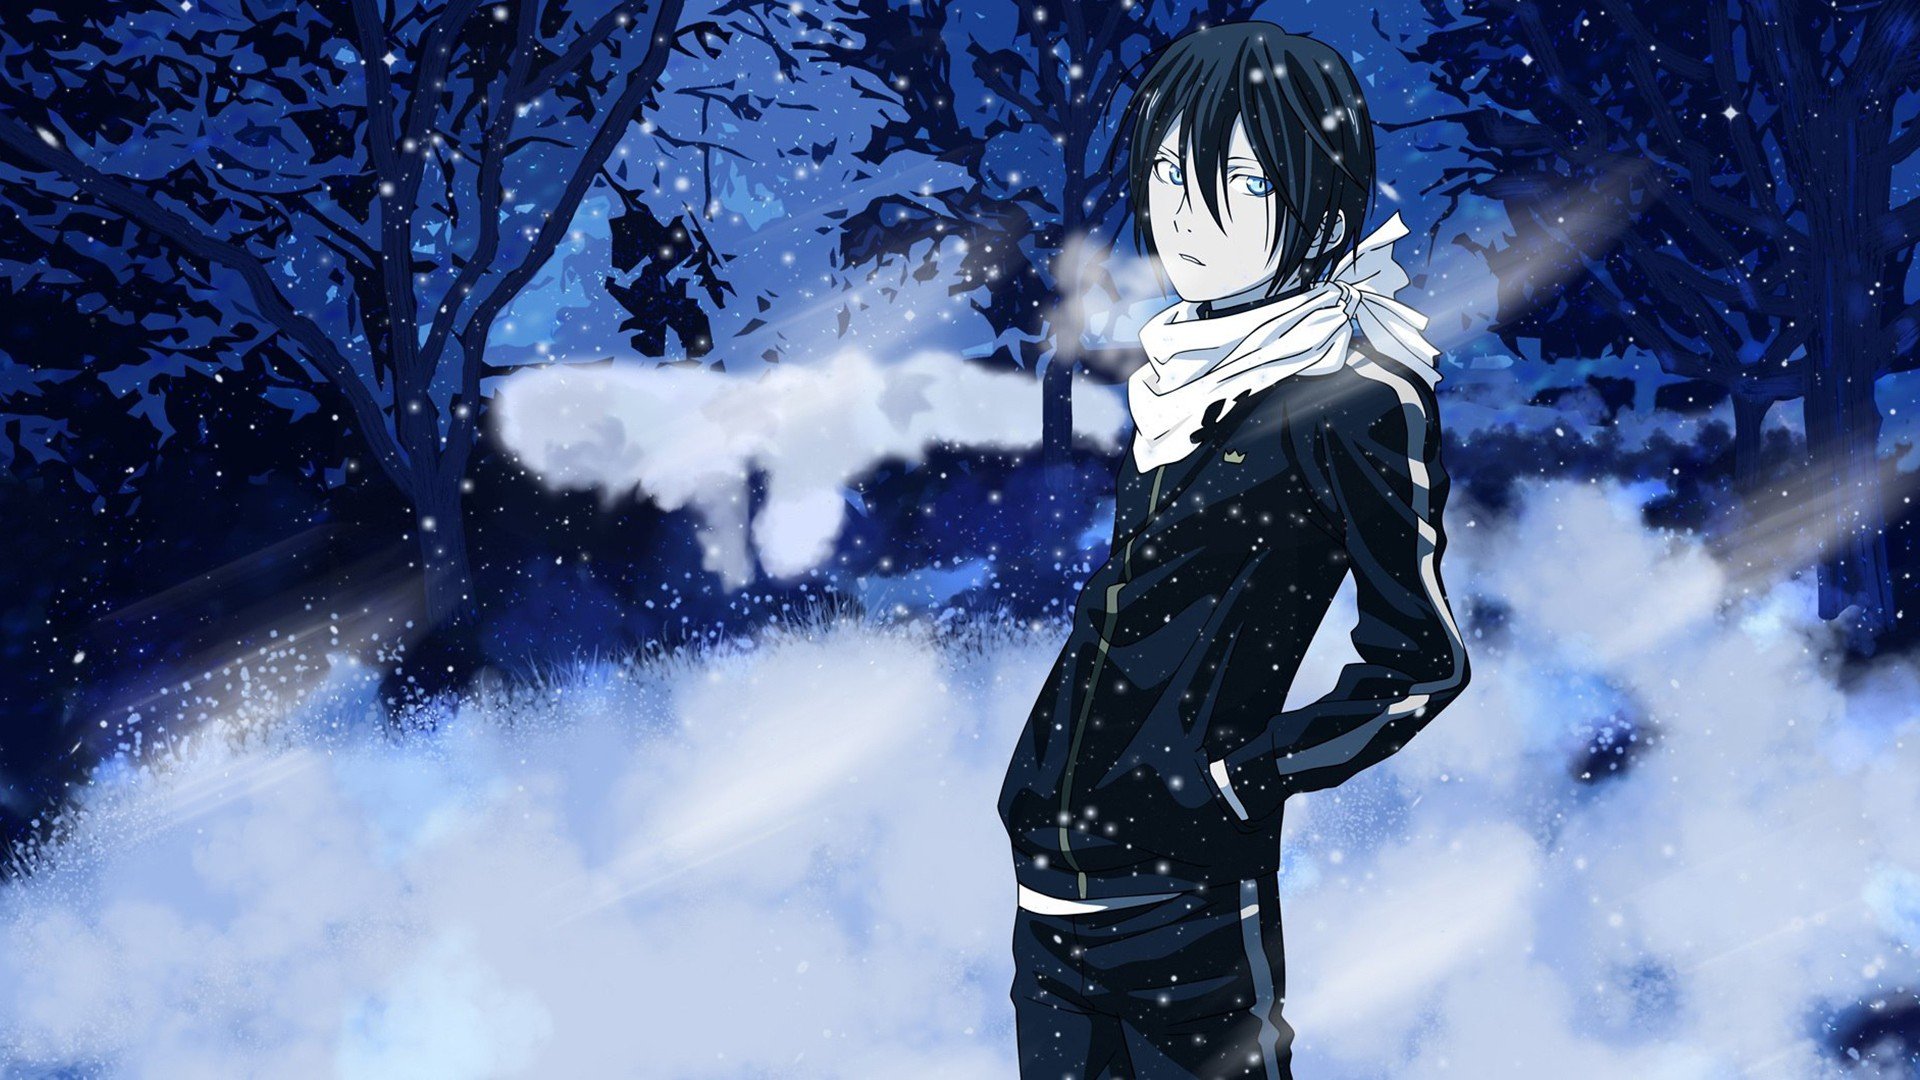 anime, Noragami, Yato (Noragami), Snow, Winter Wallpaper